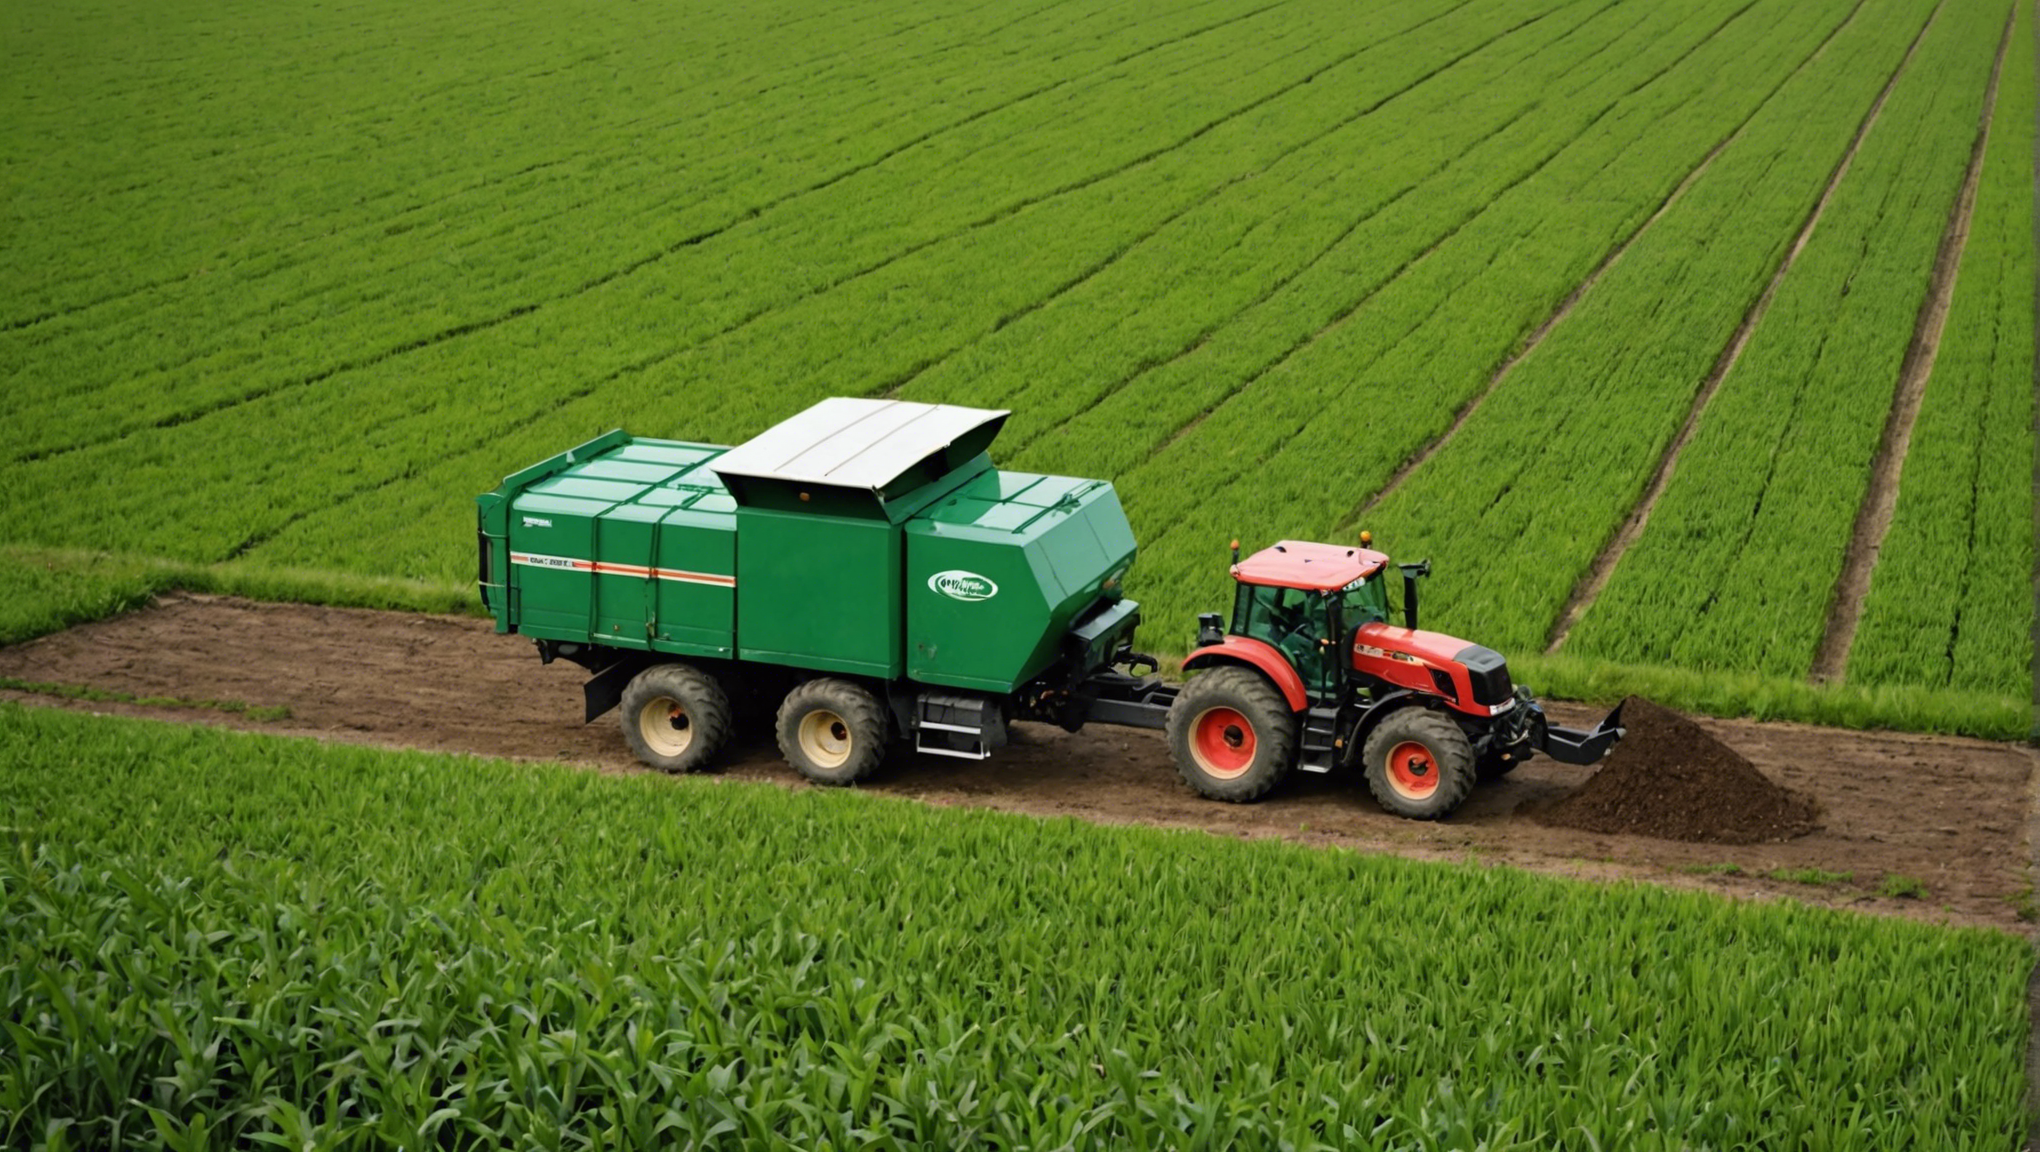 découvrez comment valoriser agricolement les déchets pour en tirer profit et contribuer à un environnement plus durable.